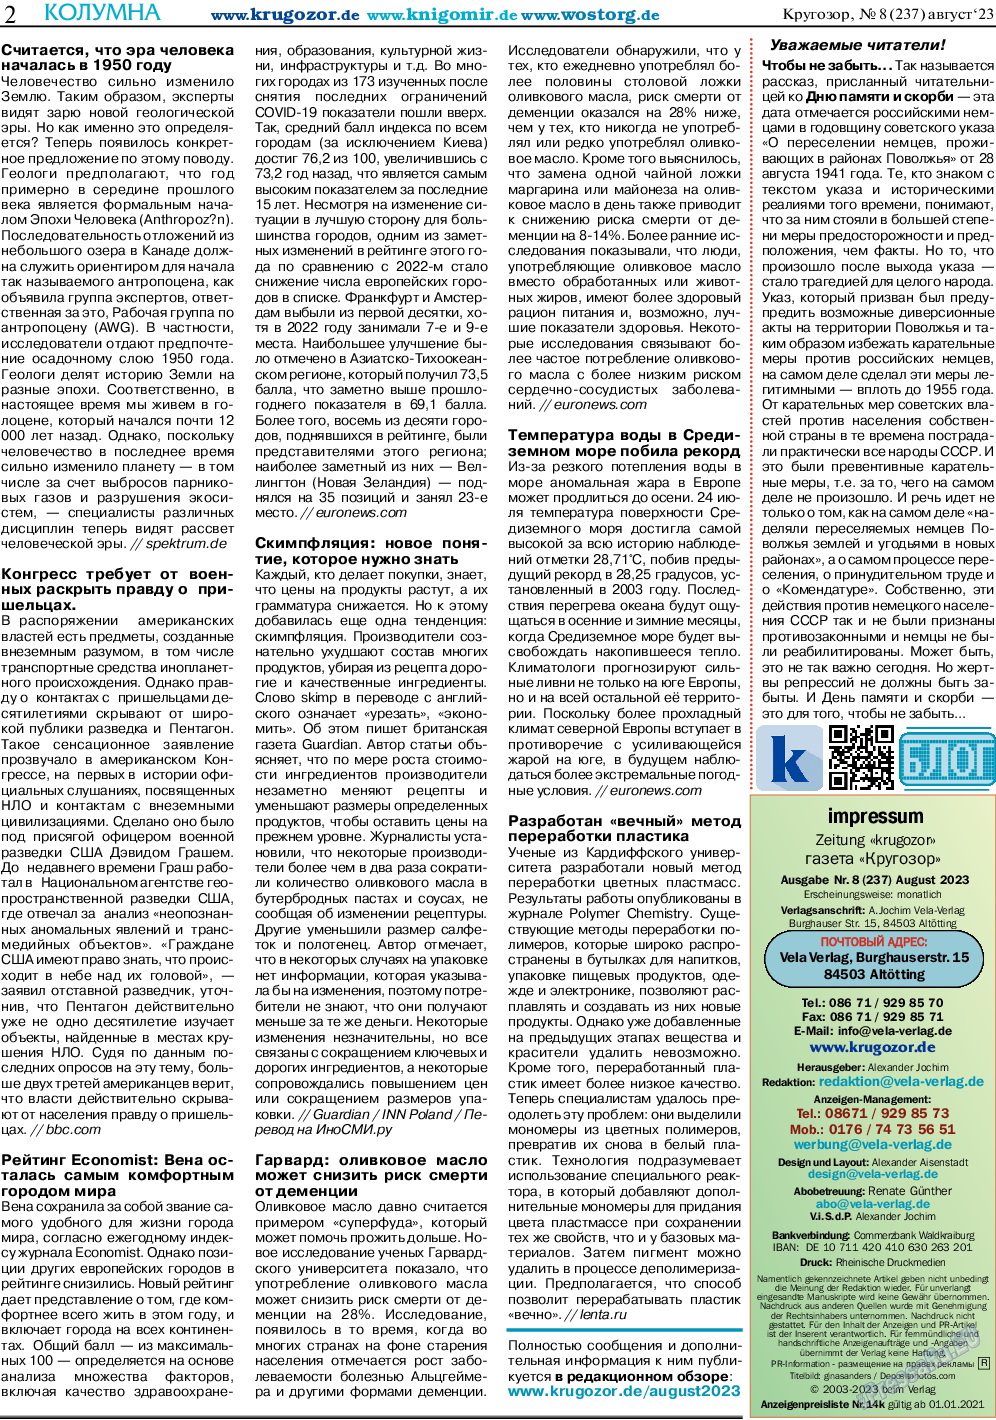 Кругозор, газета. 2023 №8 стр.2